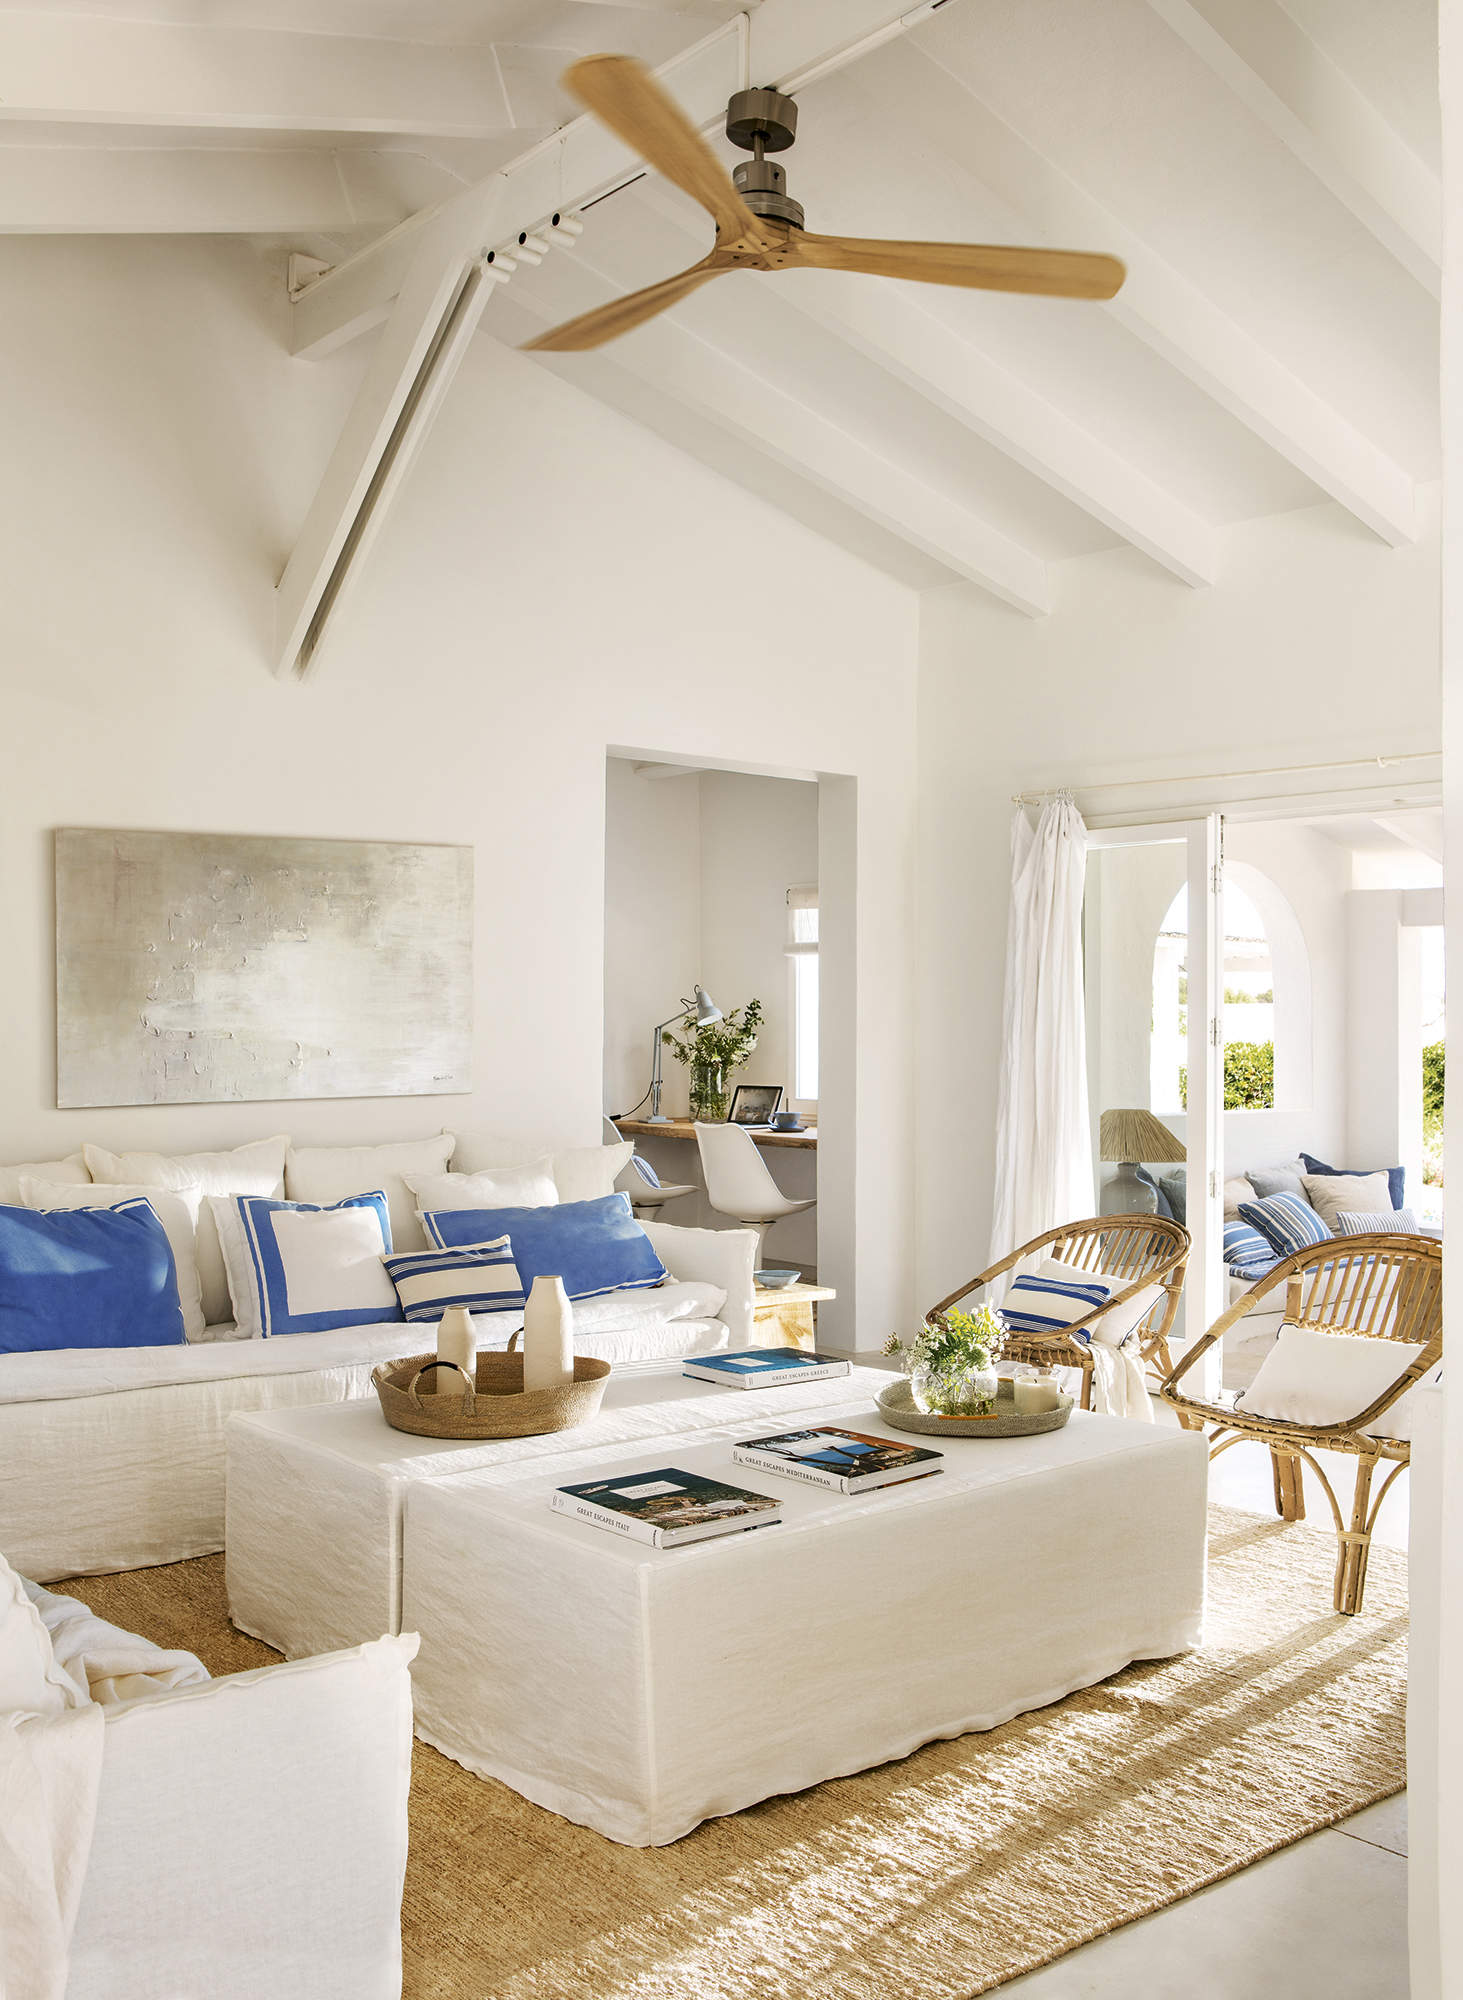 Salón mediterráneo con sofá de lino blanco, pufs, cojines azules y sillones de fibras